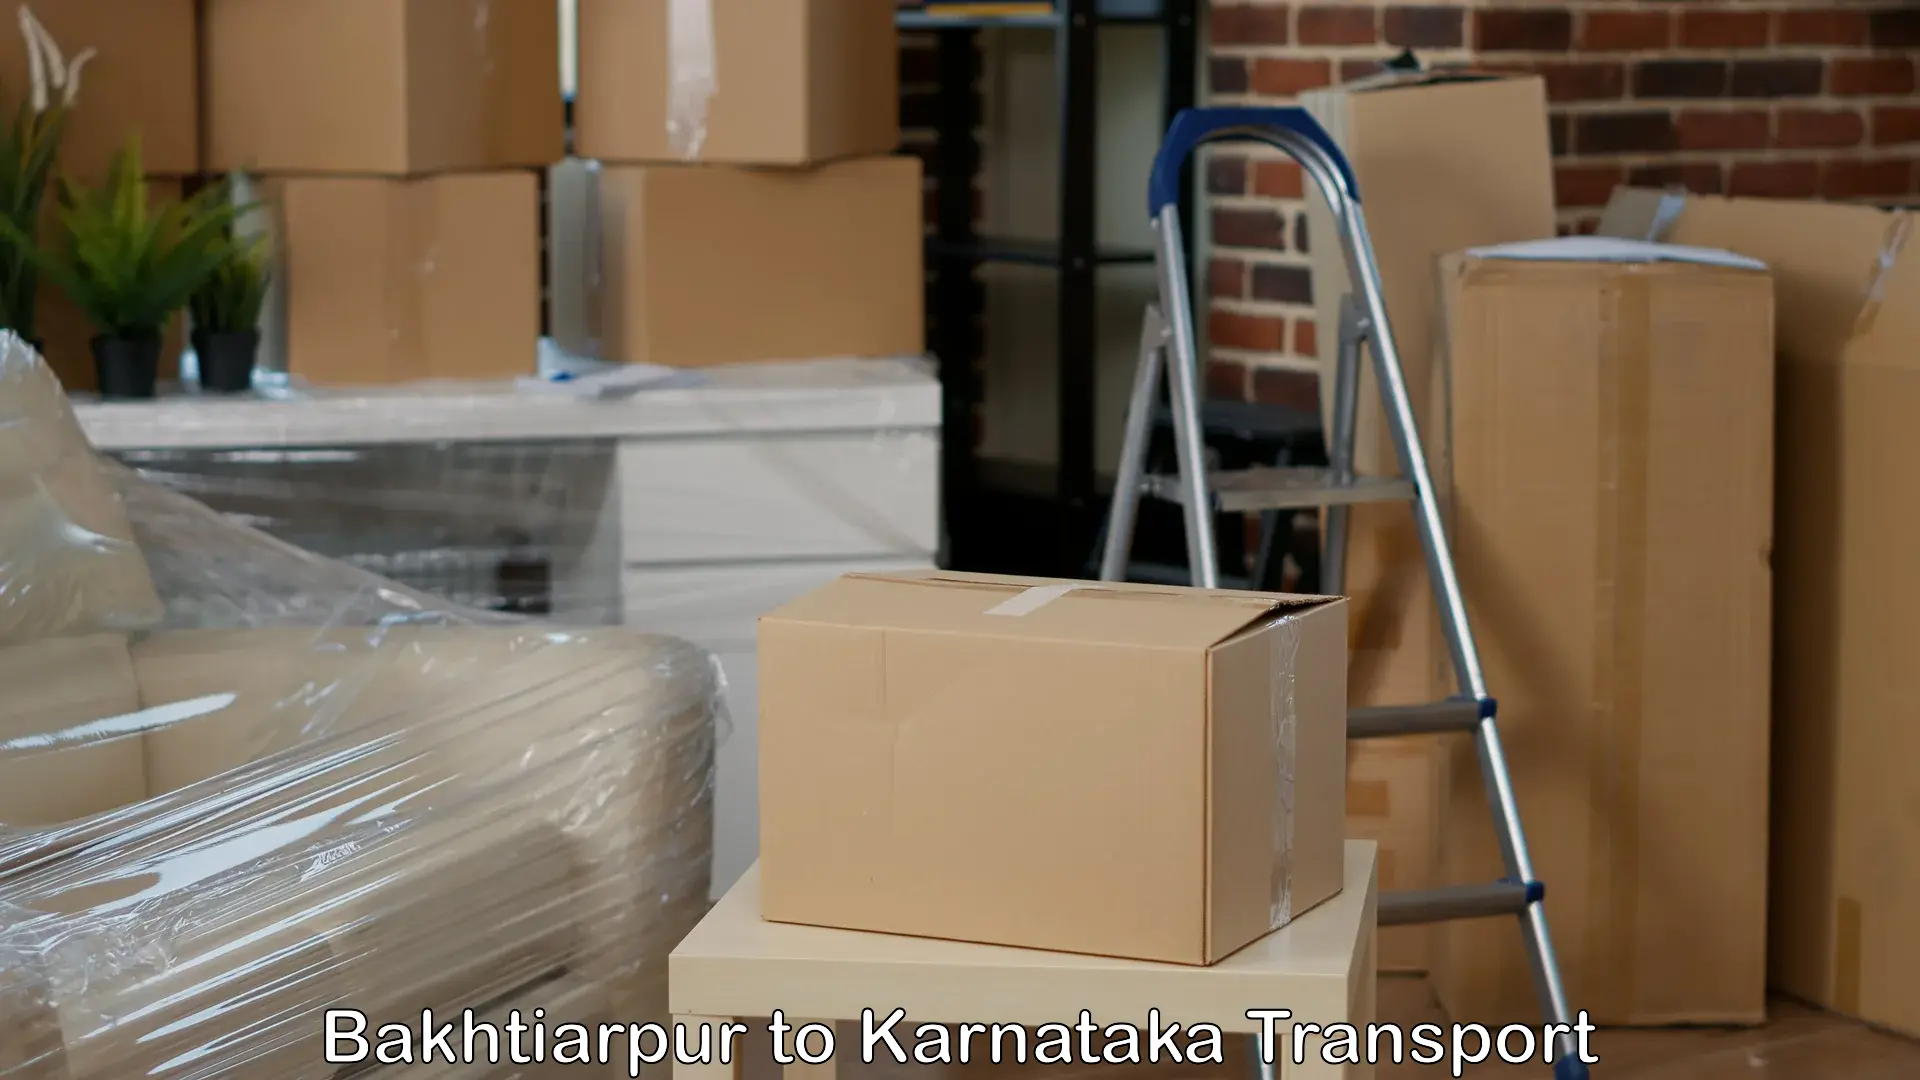 Parcel transport services Bakhtiarpur to Krishnarajanagara